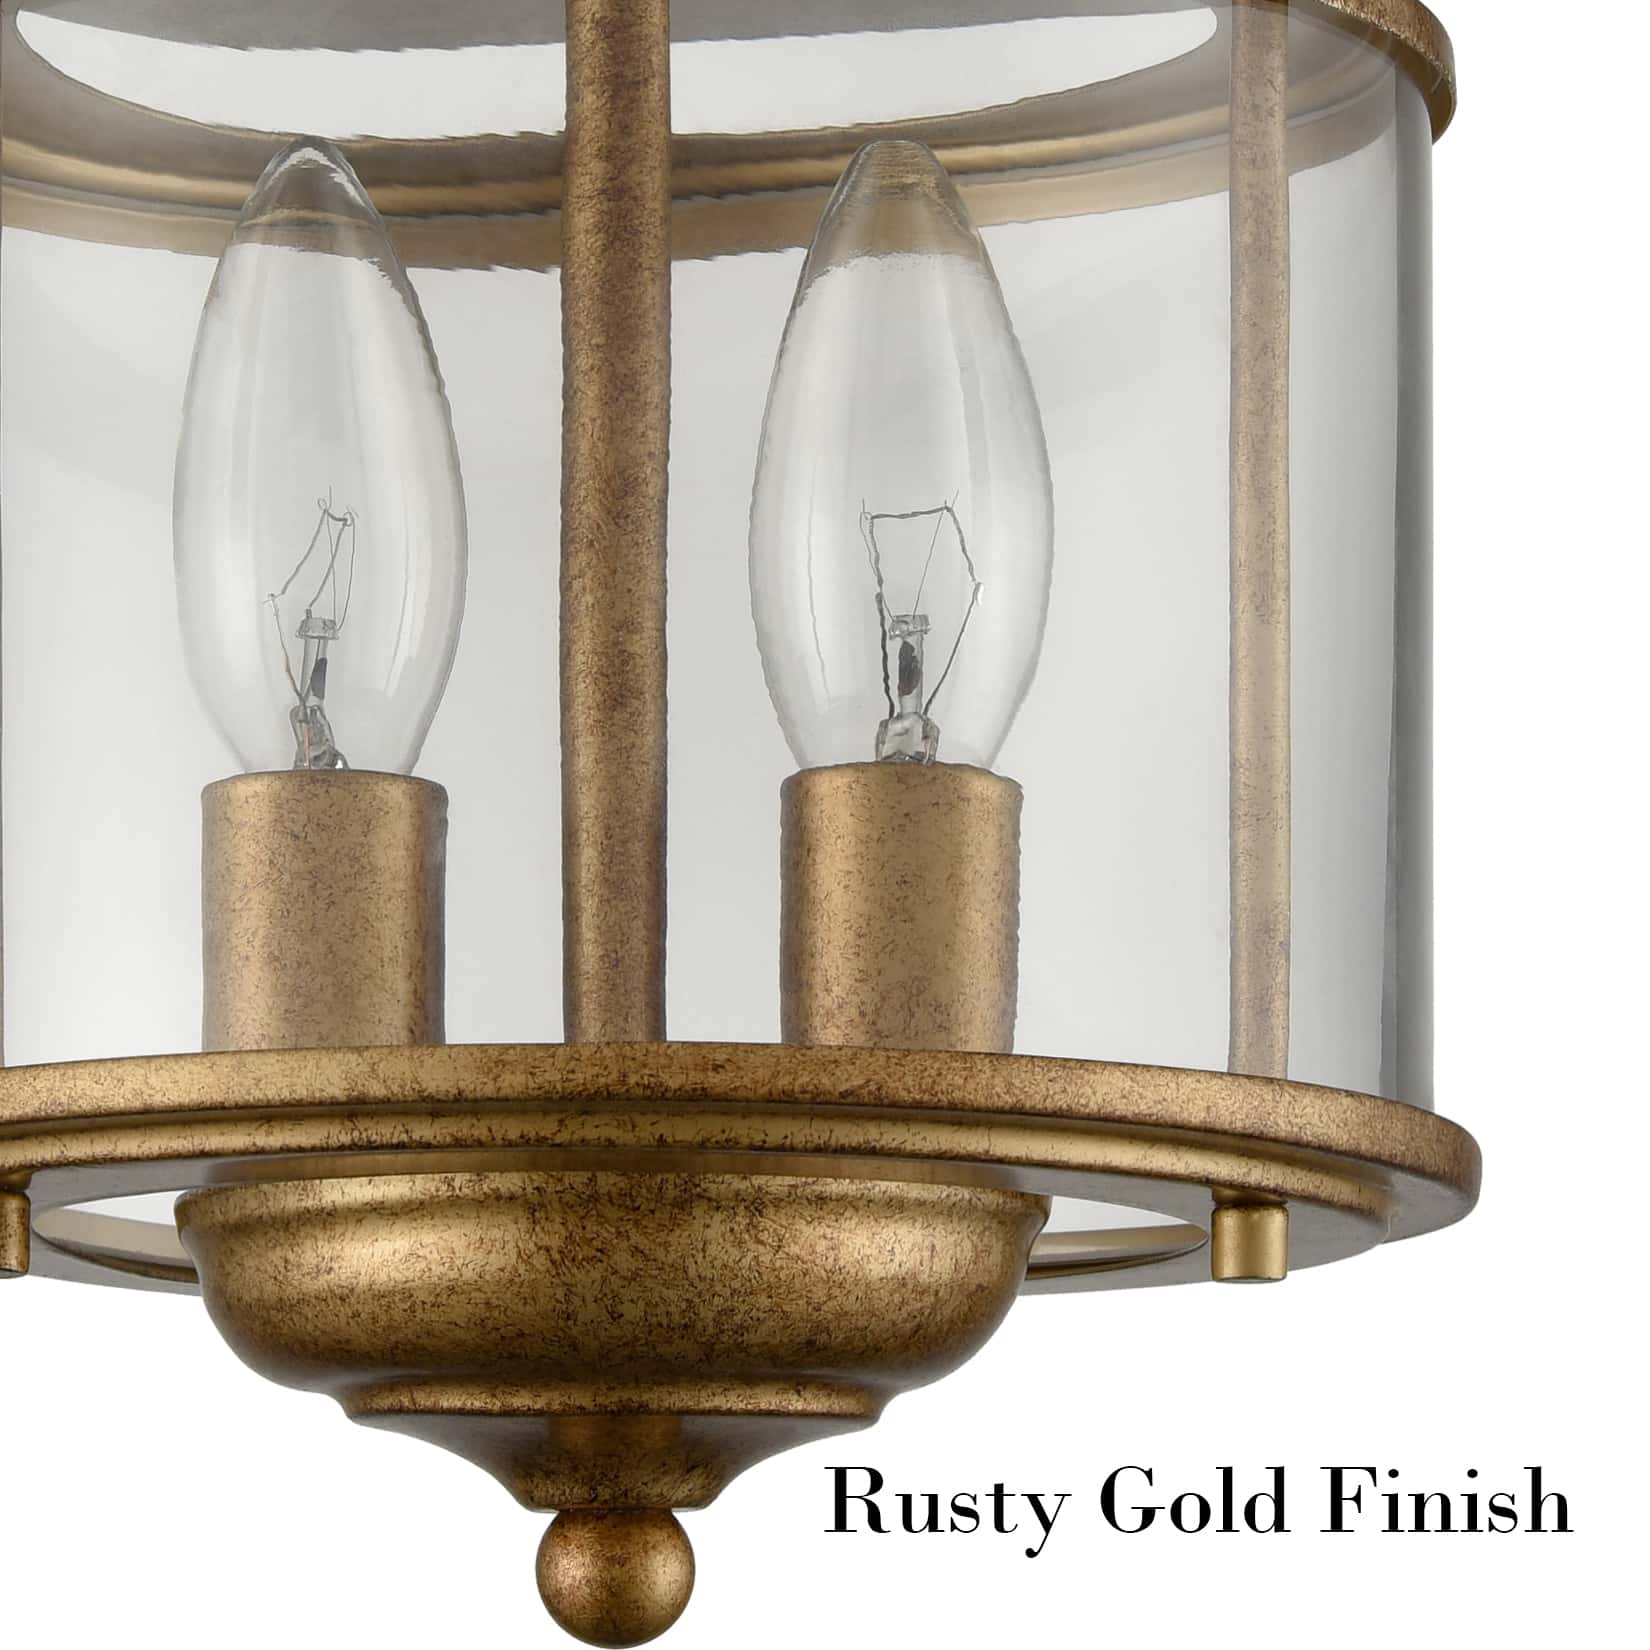 Antique Brass Flush Mount Ceiling Light 2-Light Glass Ceiling Light Fixture